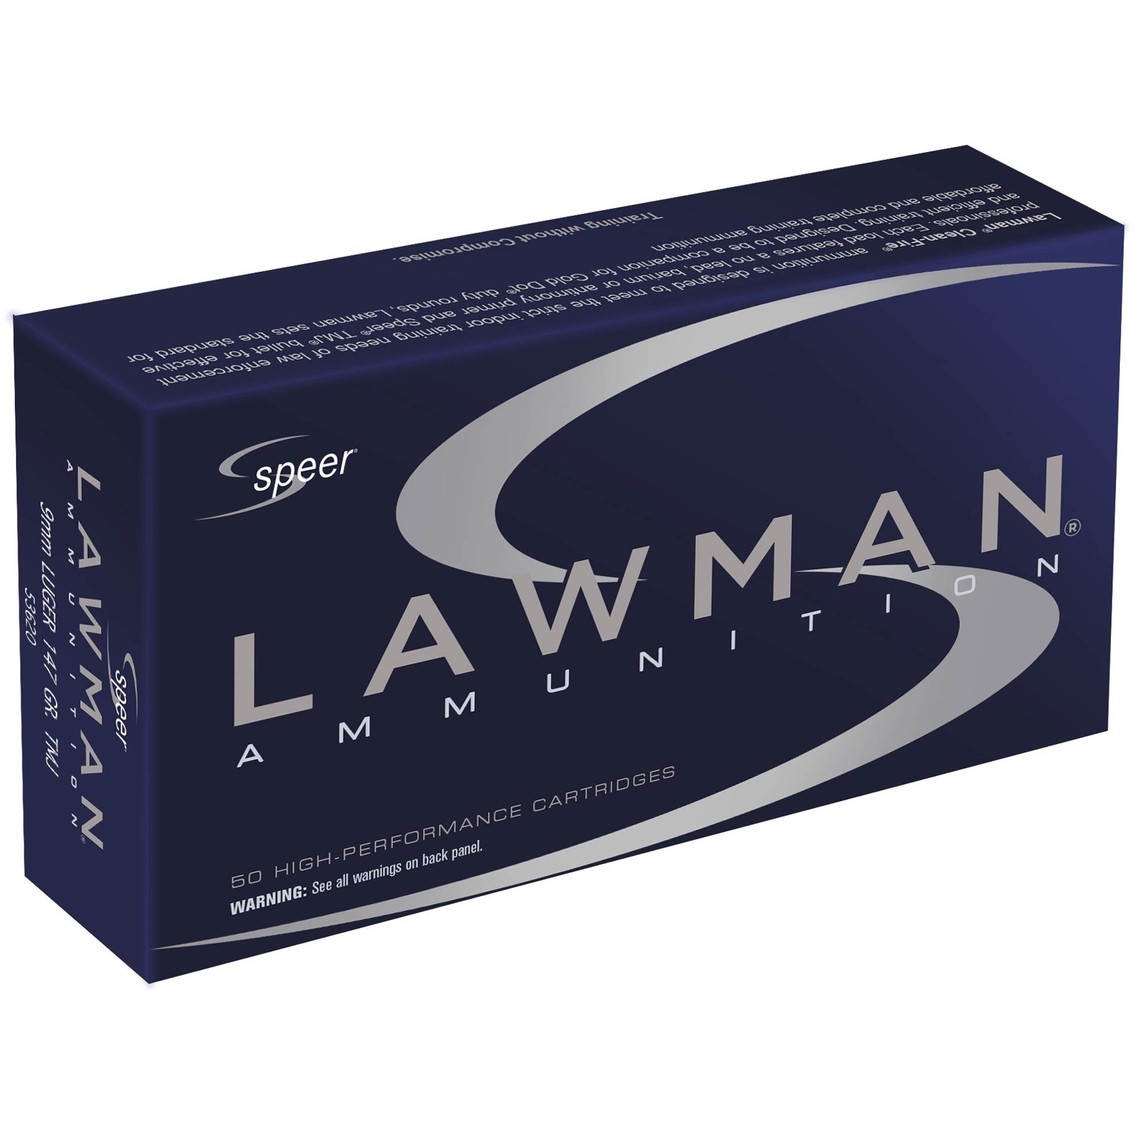 Cci Speer Lawman 9mm 147 Gr. Total Metal Jacket, 50 Rounds | Handgun ...